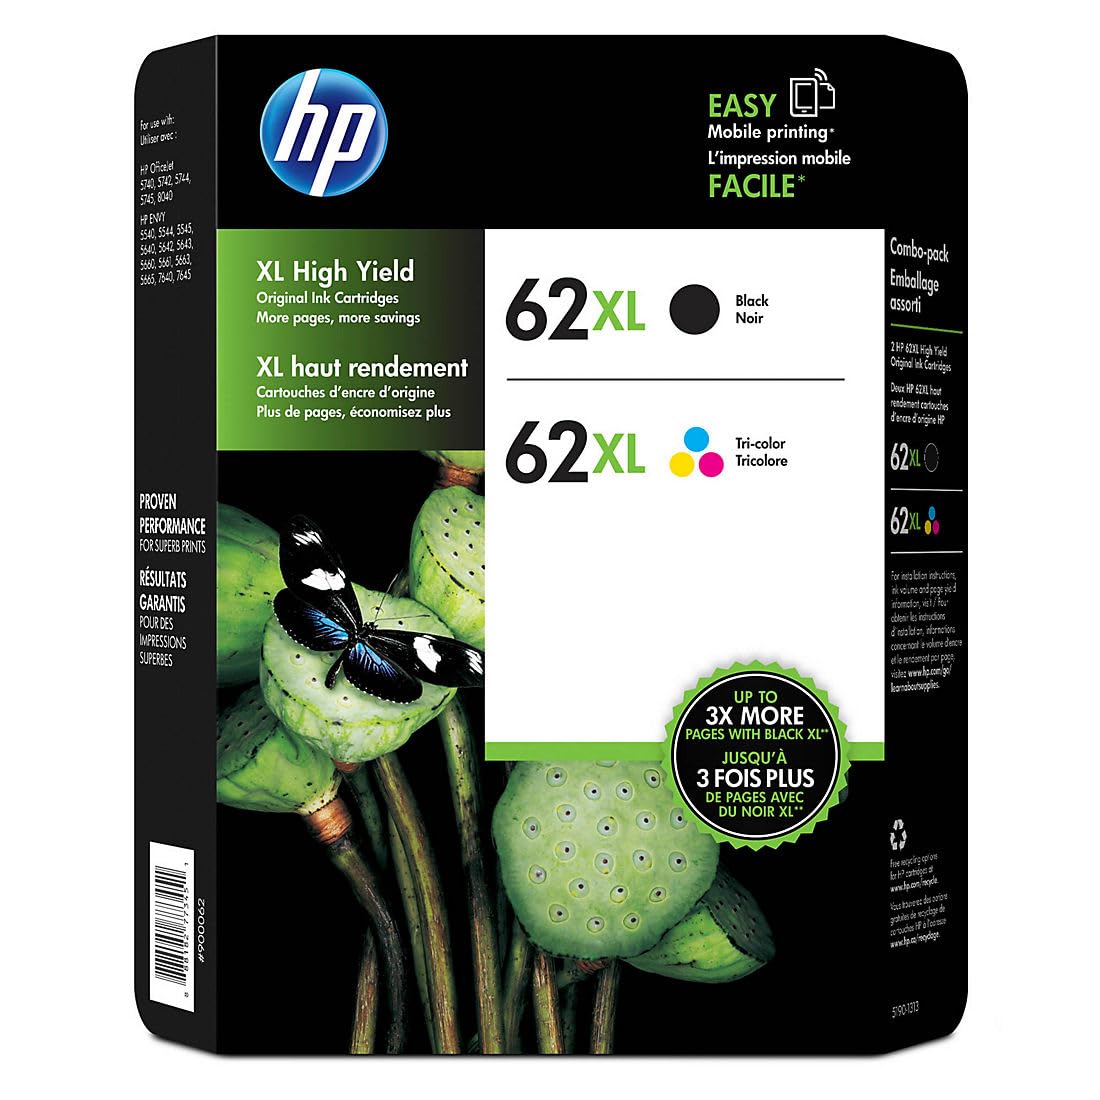 HP Cartuchos de impressão Jetdirect pretos e tricolores de alto rendimento genuínos 62Xl de alto rendimento